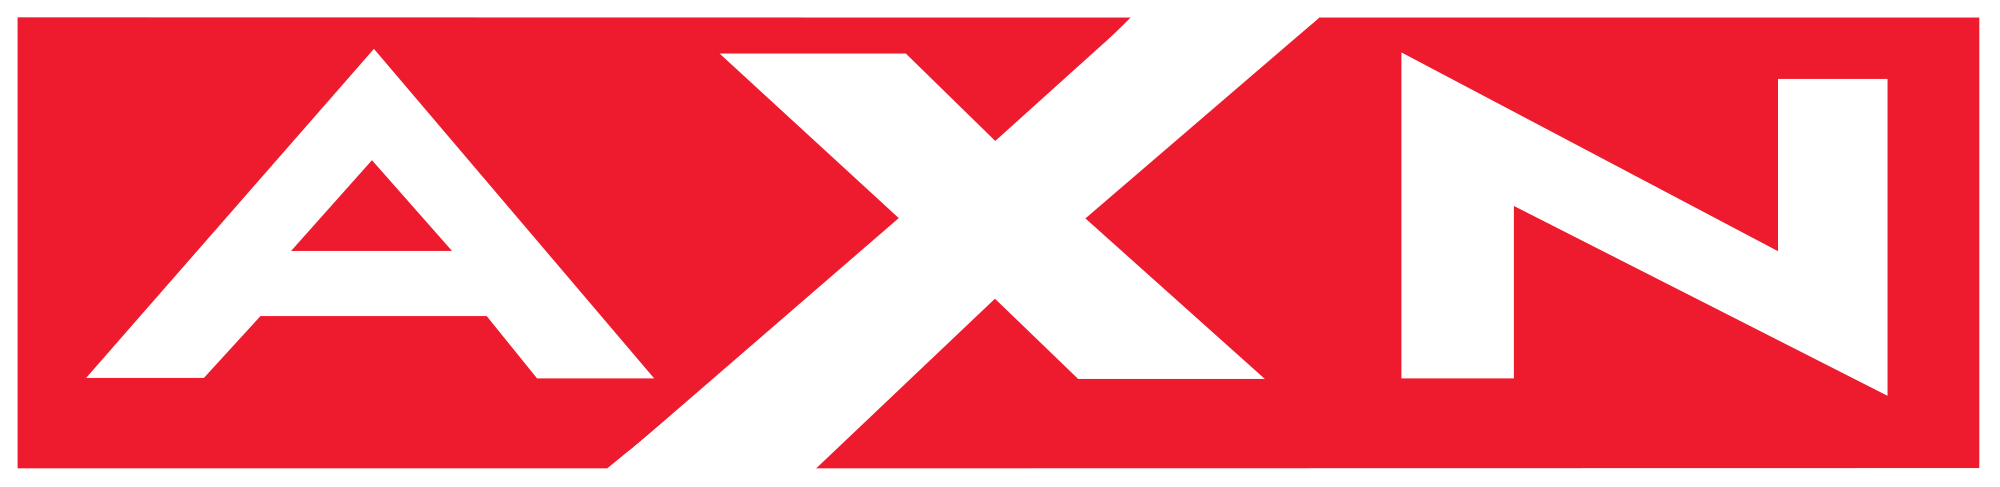 Axn 444 logo.jpg - Axn Logo P